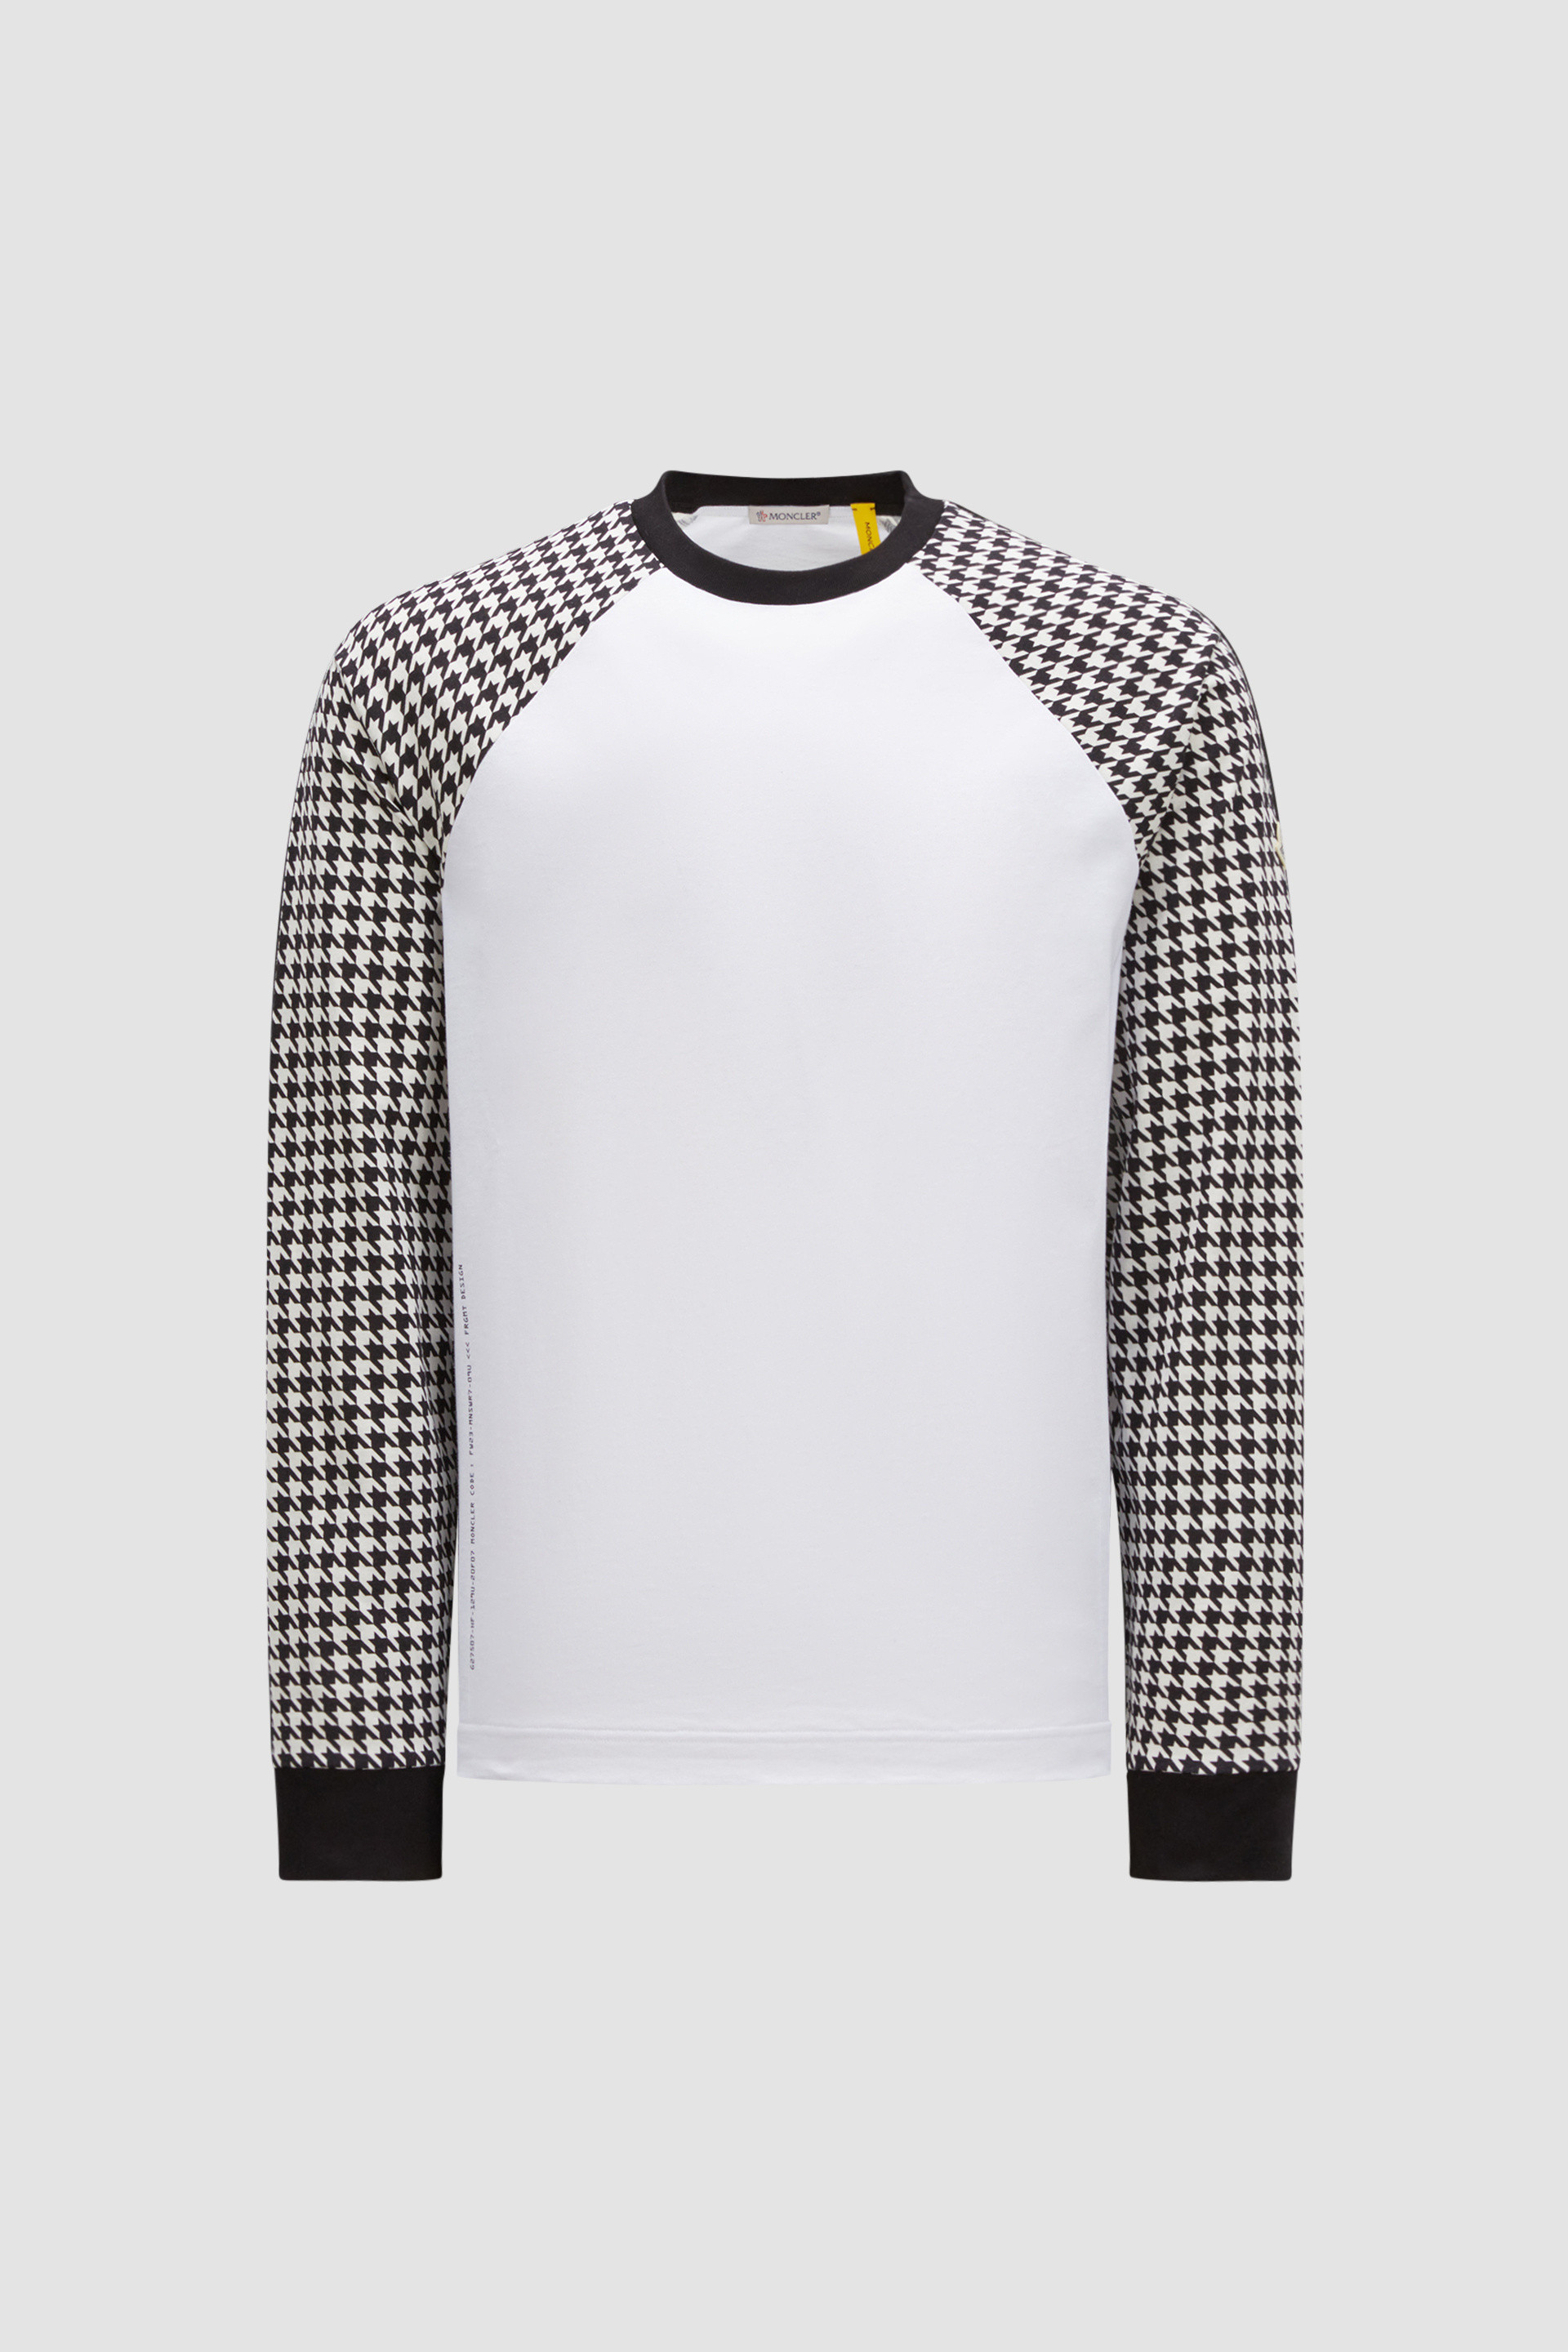 ブラック & ホワイト ロングスリーブTシャツ : Moncler x Frgmnt 向け 